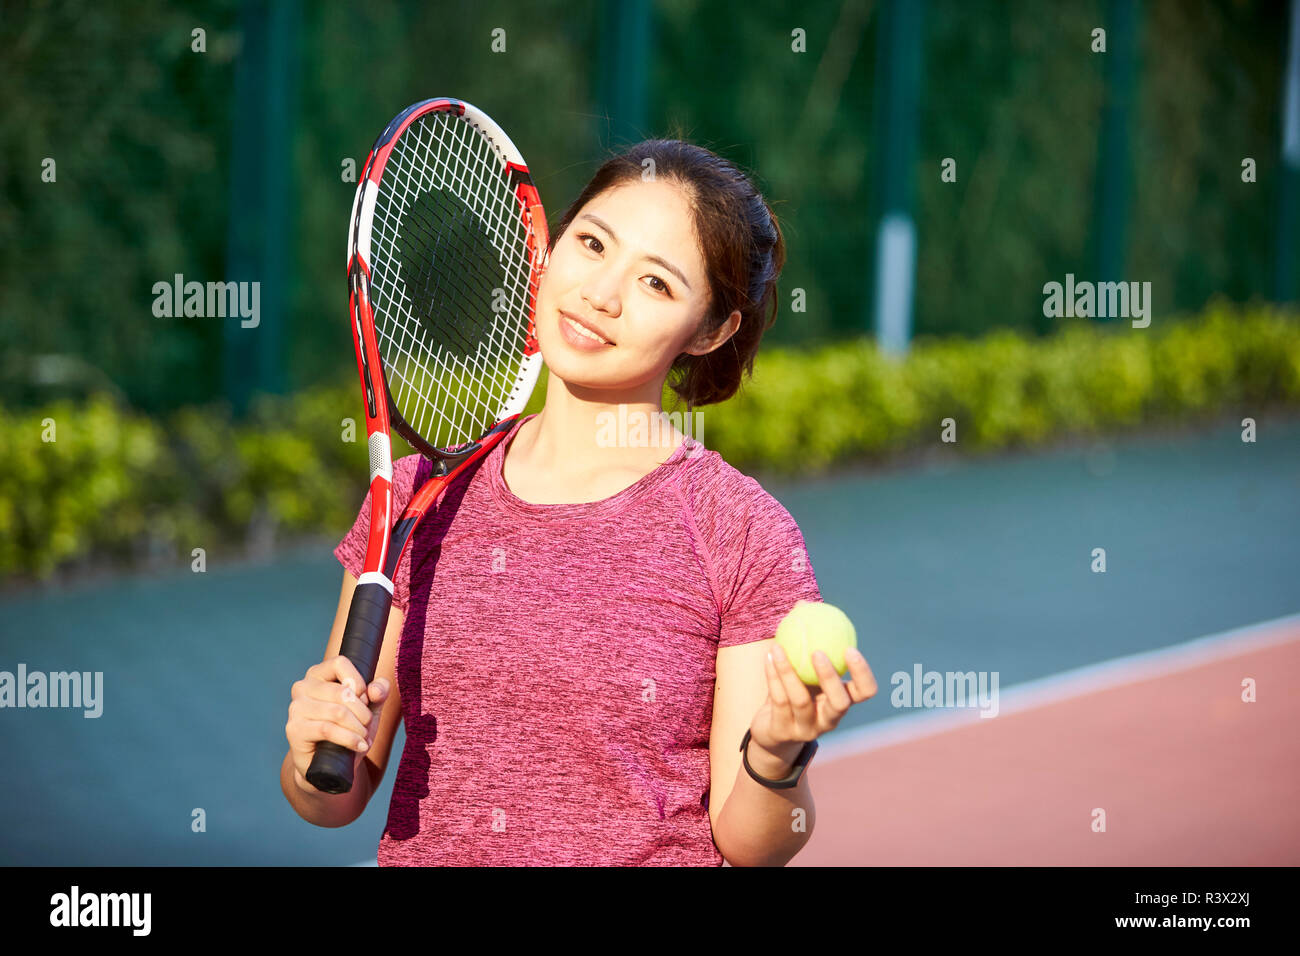 Portrait de plein air d'un jeune joueur de tennis asiatique à la caméra en souriant Banque D'Images